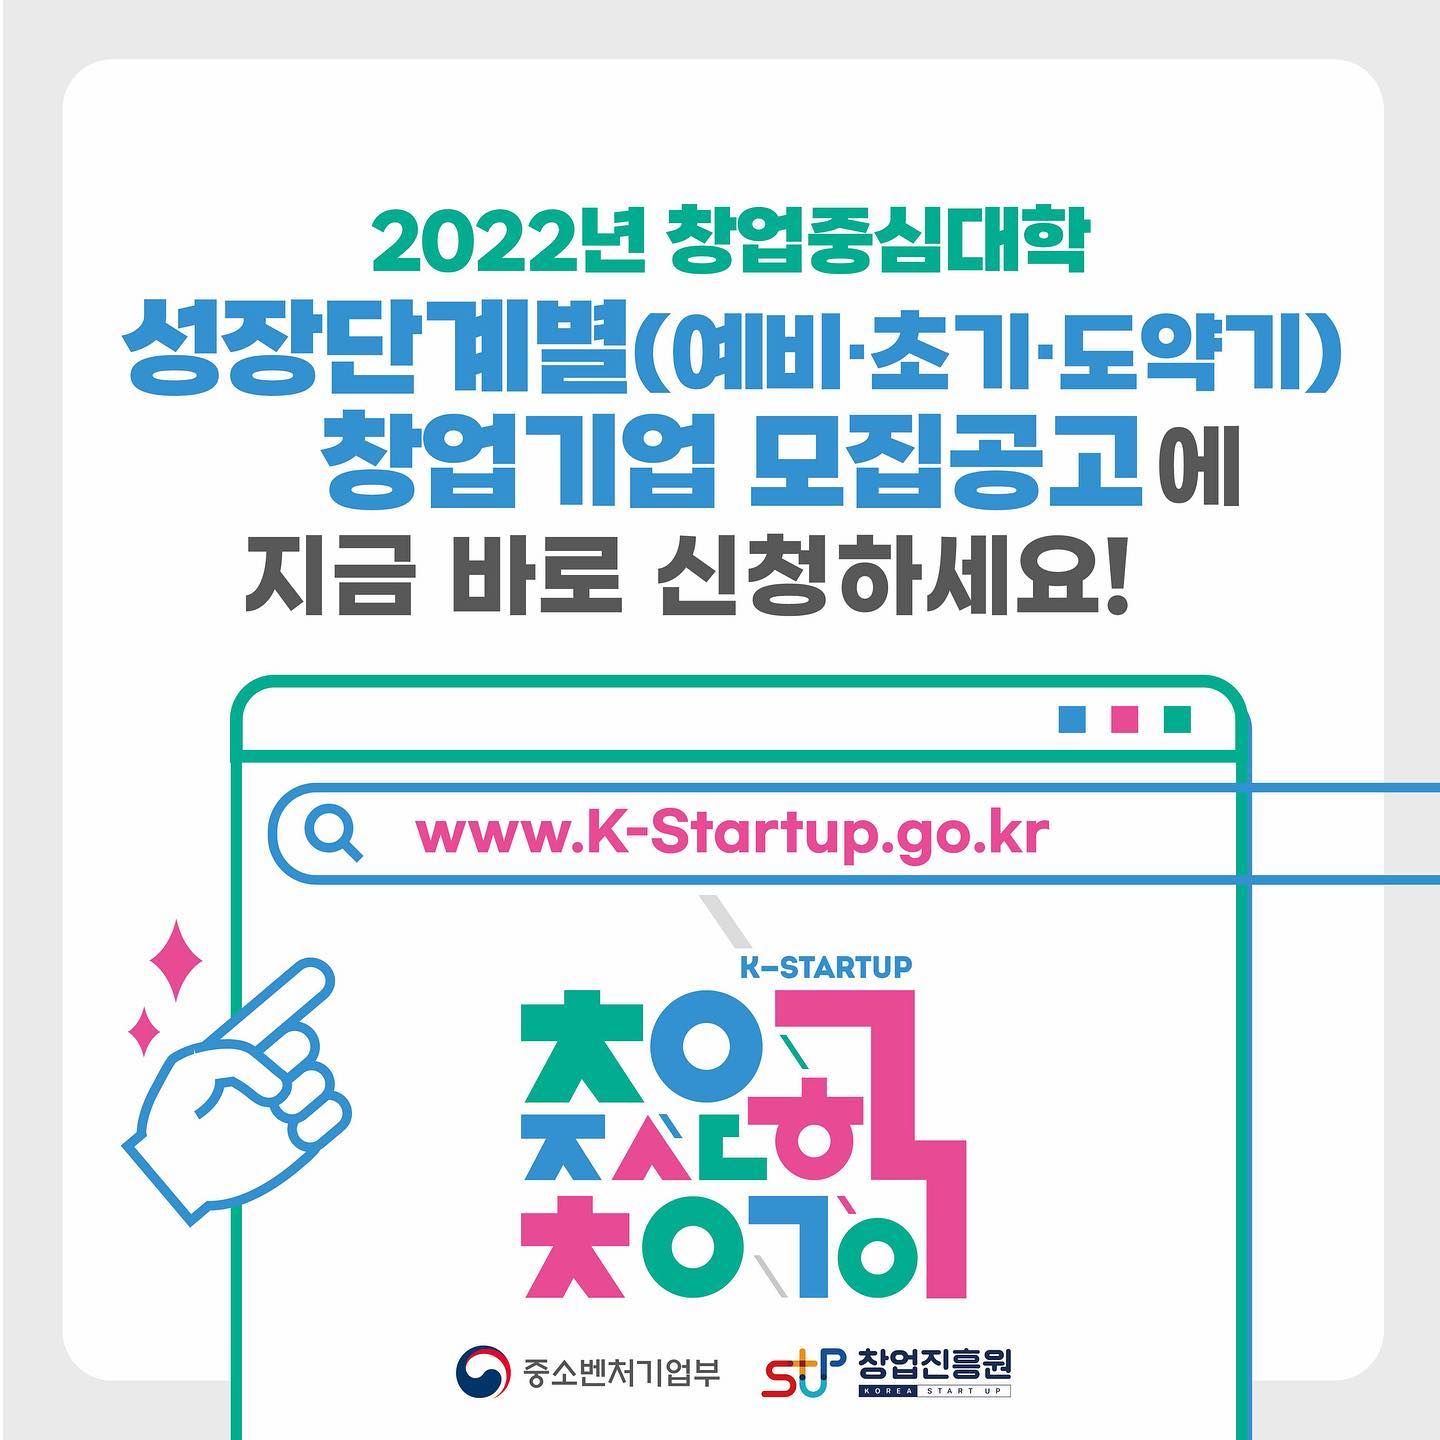 

2022년 창업중심대학 성장단계별(예비·초기·도약기) 창업기업 모집공고에 지금 바로 신청하세요!
www.k-startup.go.kr
중소벤처기업부 로고, 창업진흥원 로고